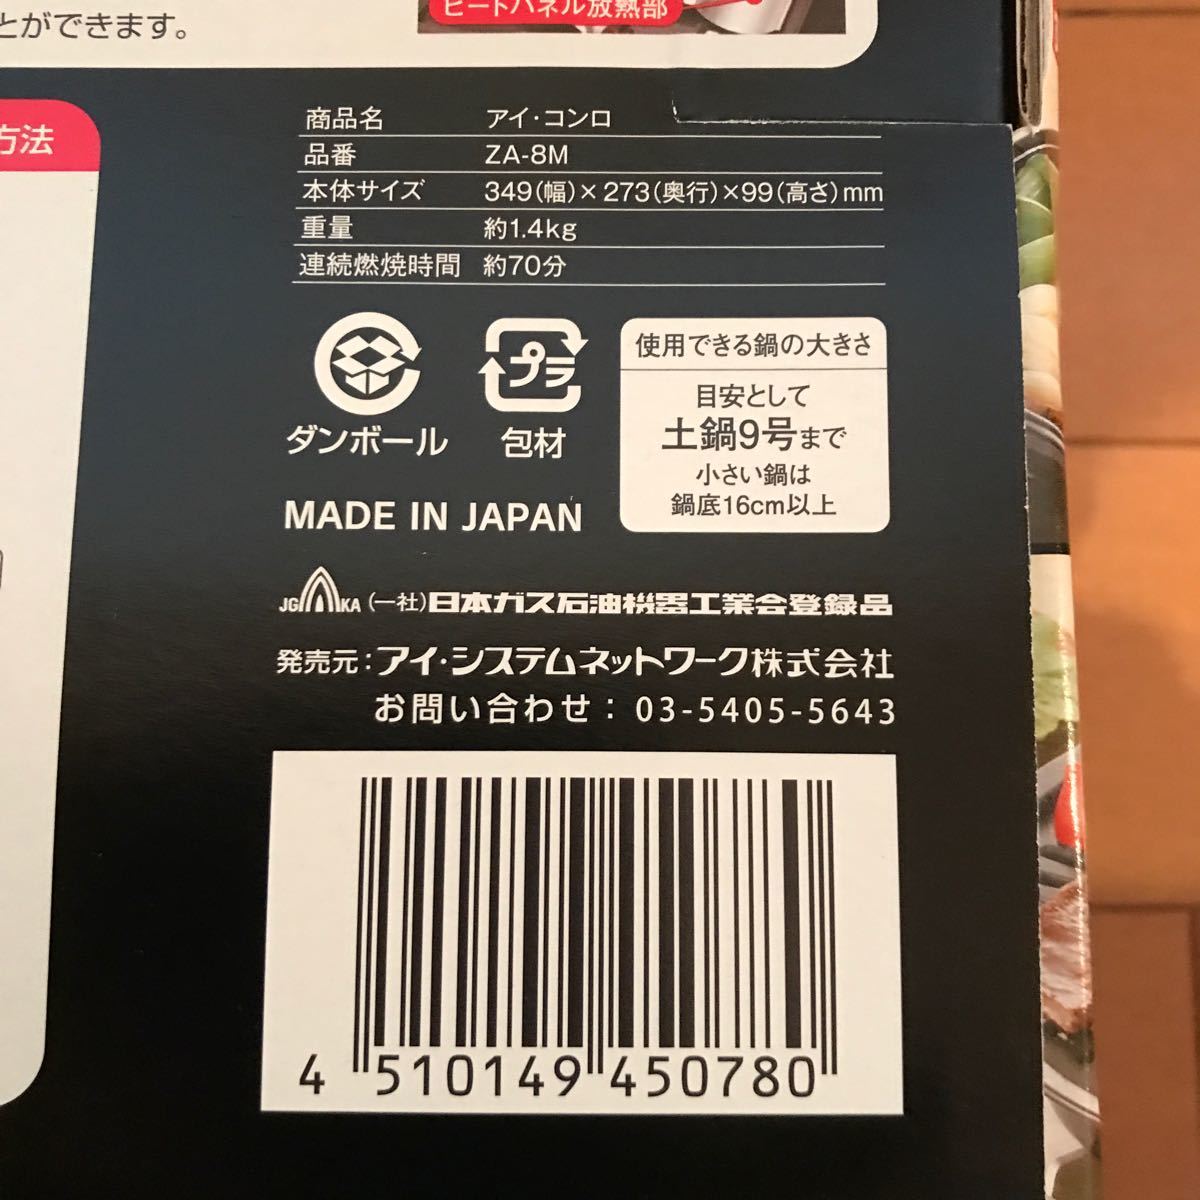 新品未開封 日本製 カセットコンロ 卓上コンロ アイ・コンロ（ダークシルバー） ZA-8M 安全機能 3.5kw